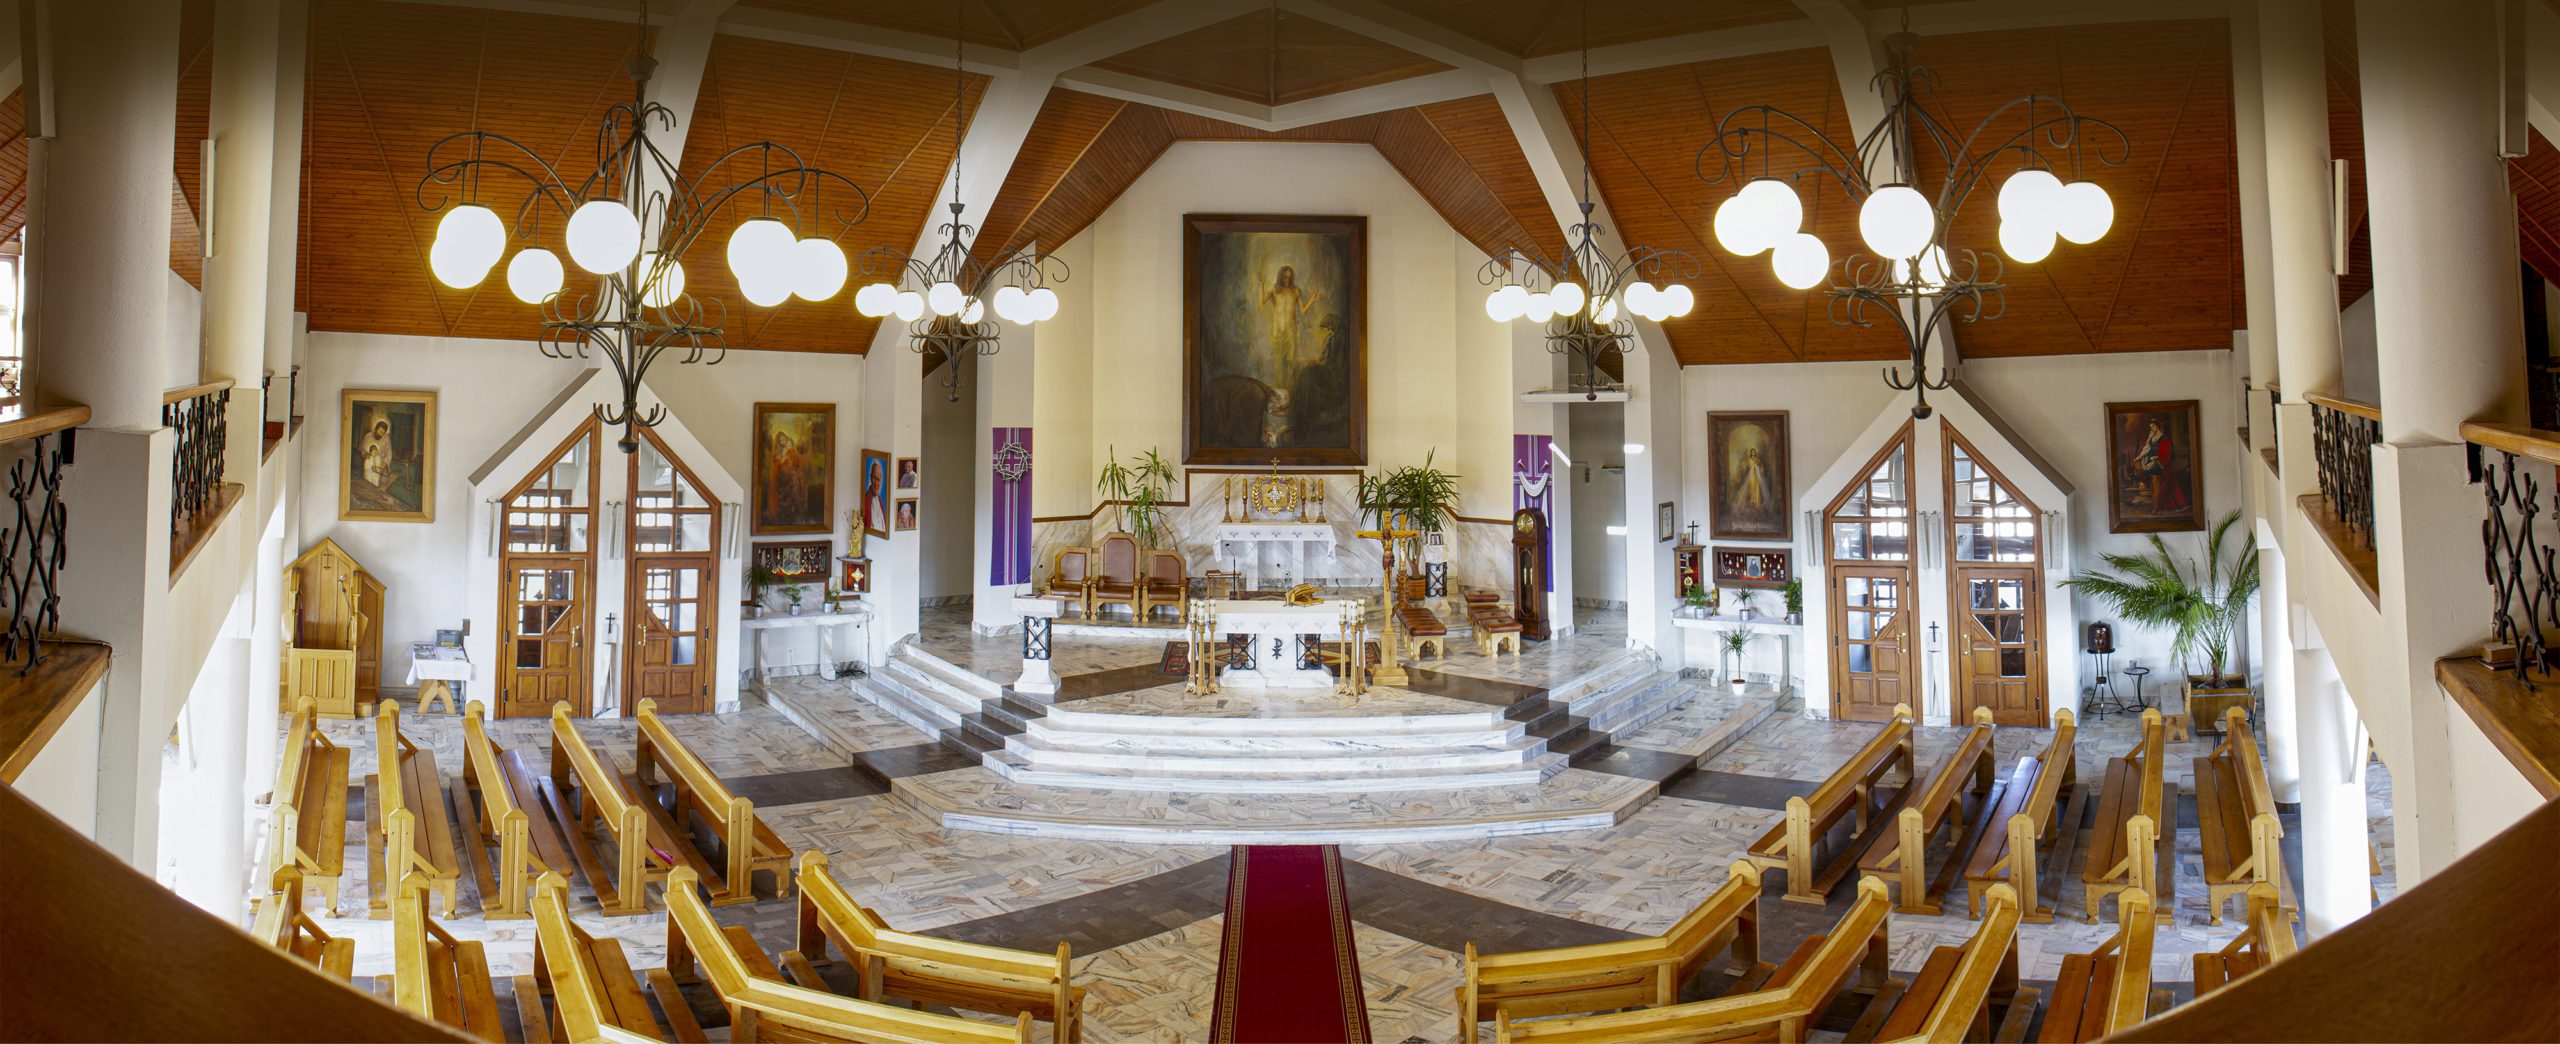 Wnętrze kościoła pw. Św. Brata Alberta w Nowym Targu